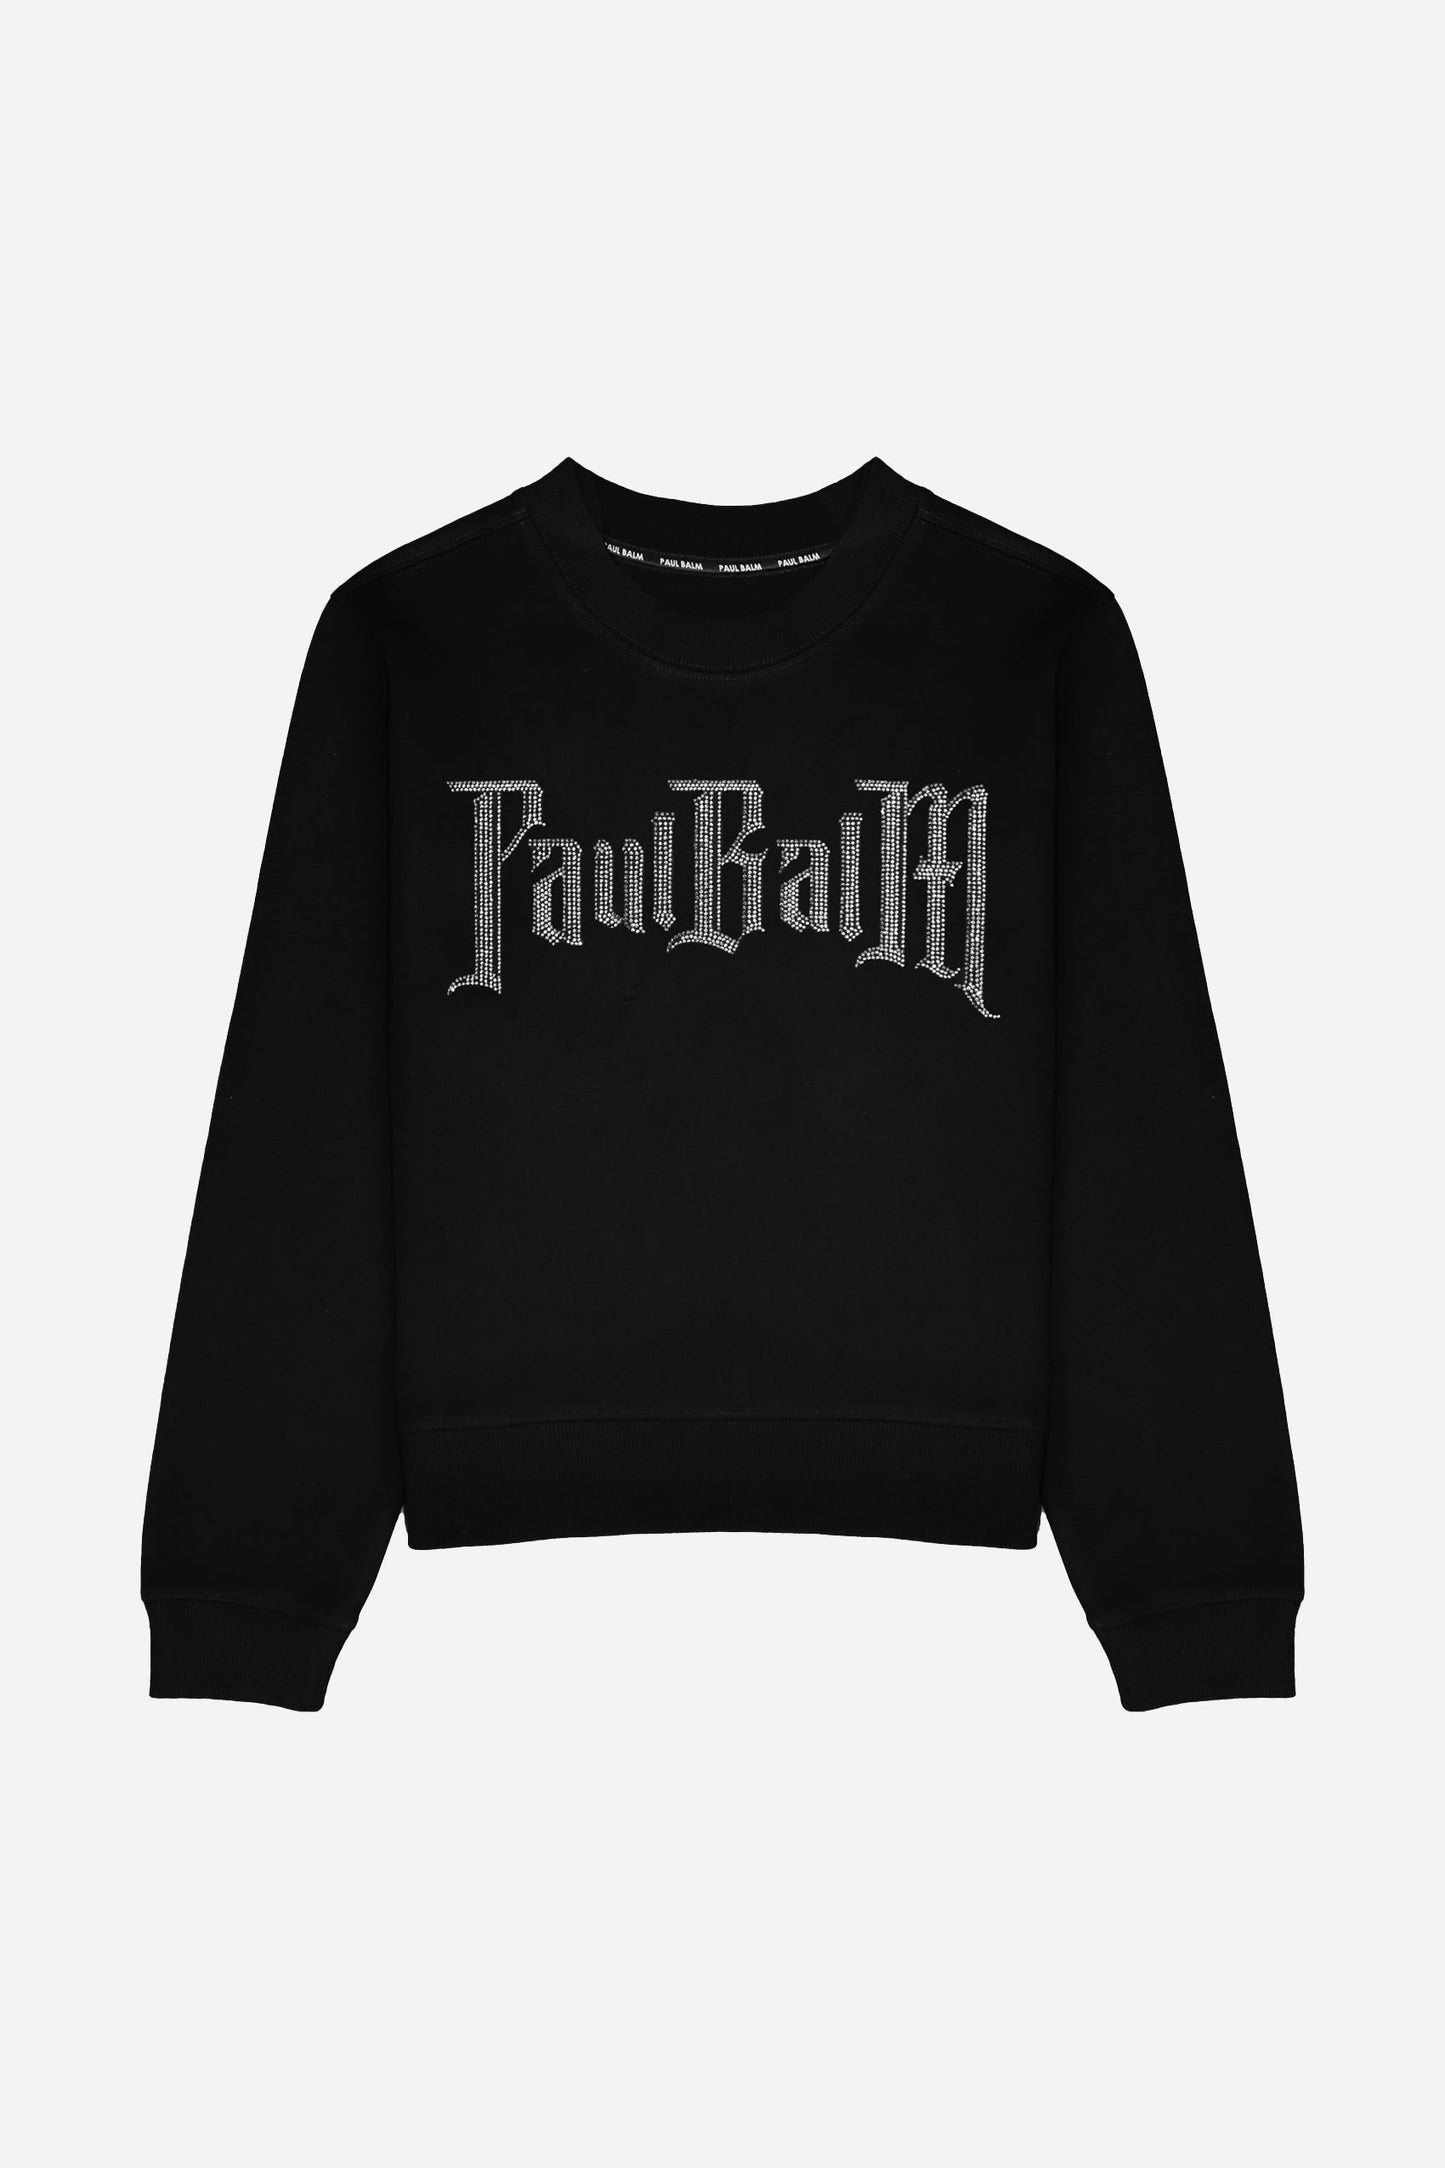 Arctic Crystals Sweatshirt - PAUL BALM WORLD